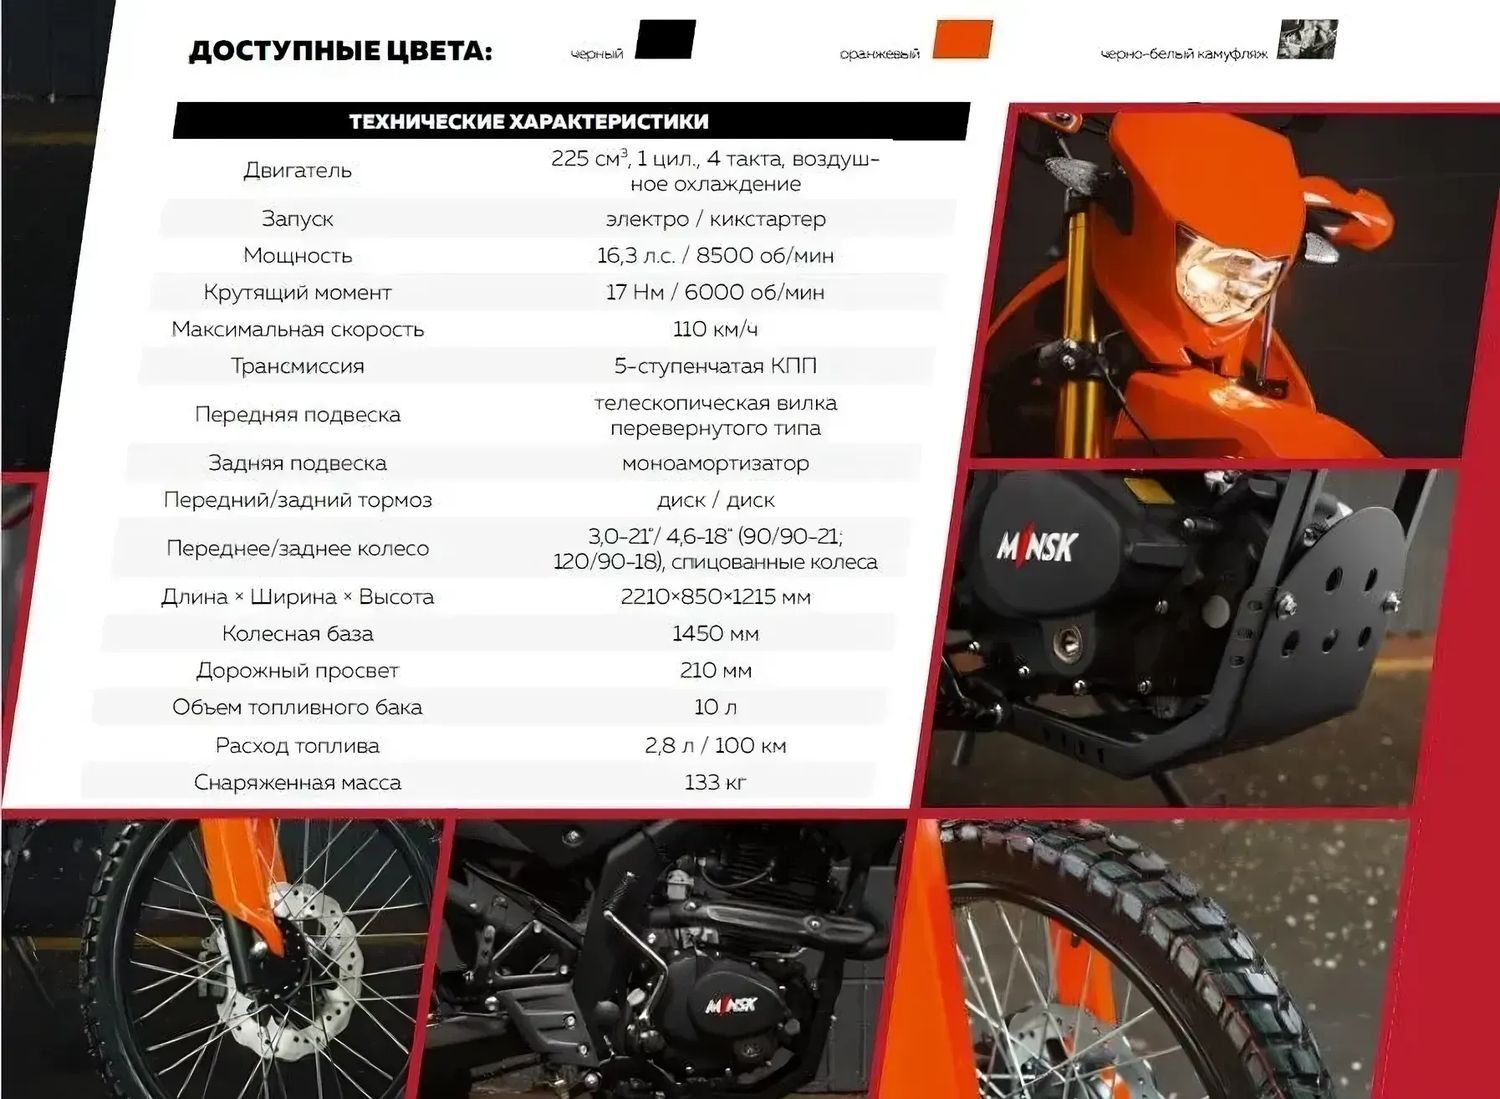 Купить мотоцикл Минск X 250 (M1NSK X250)